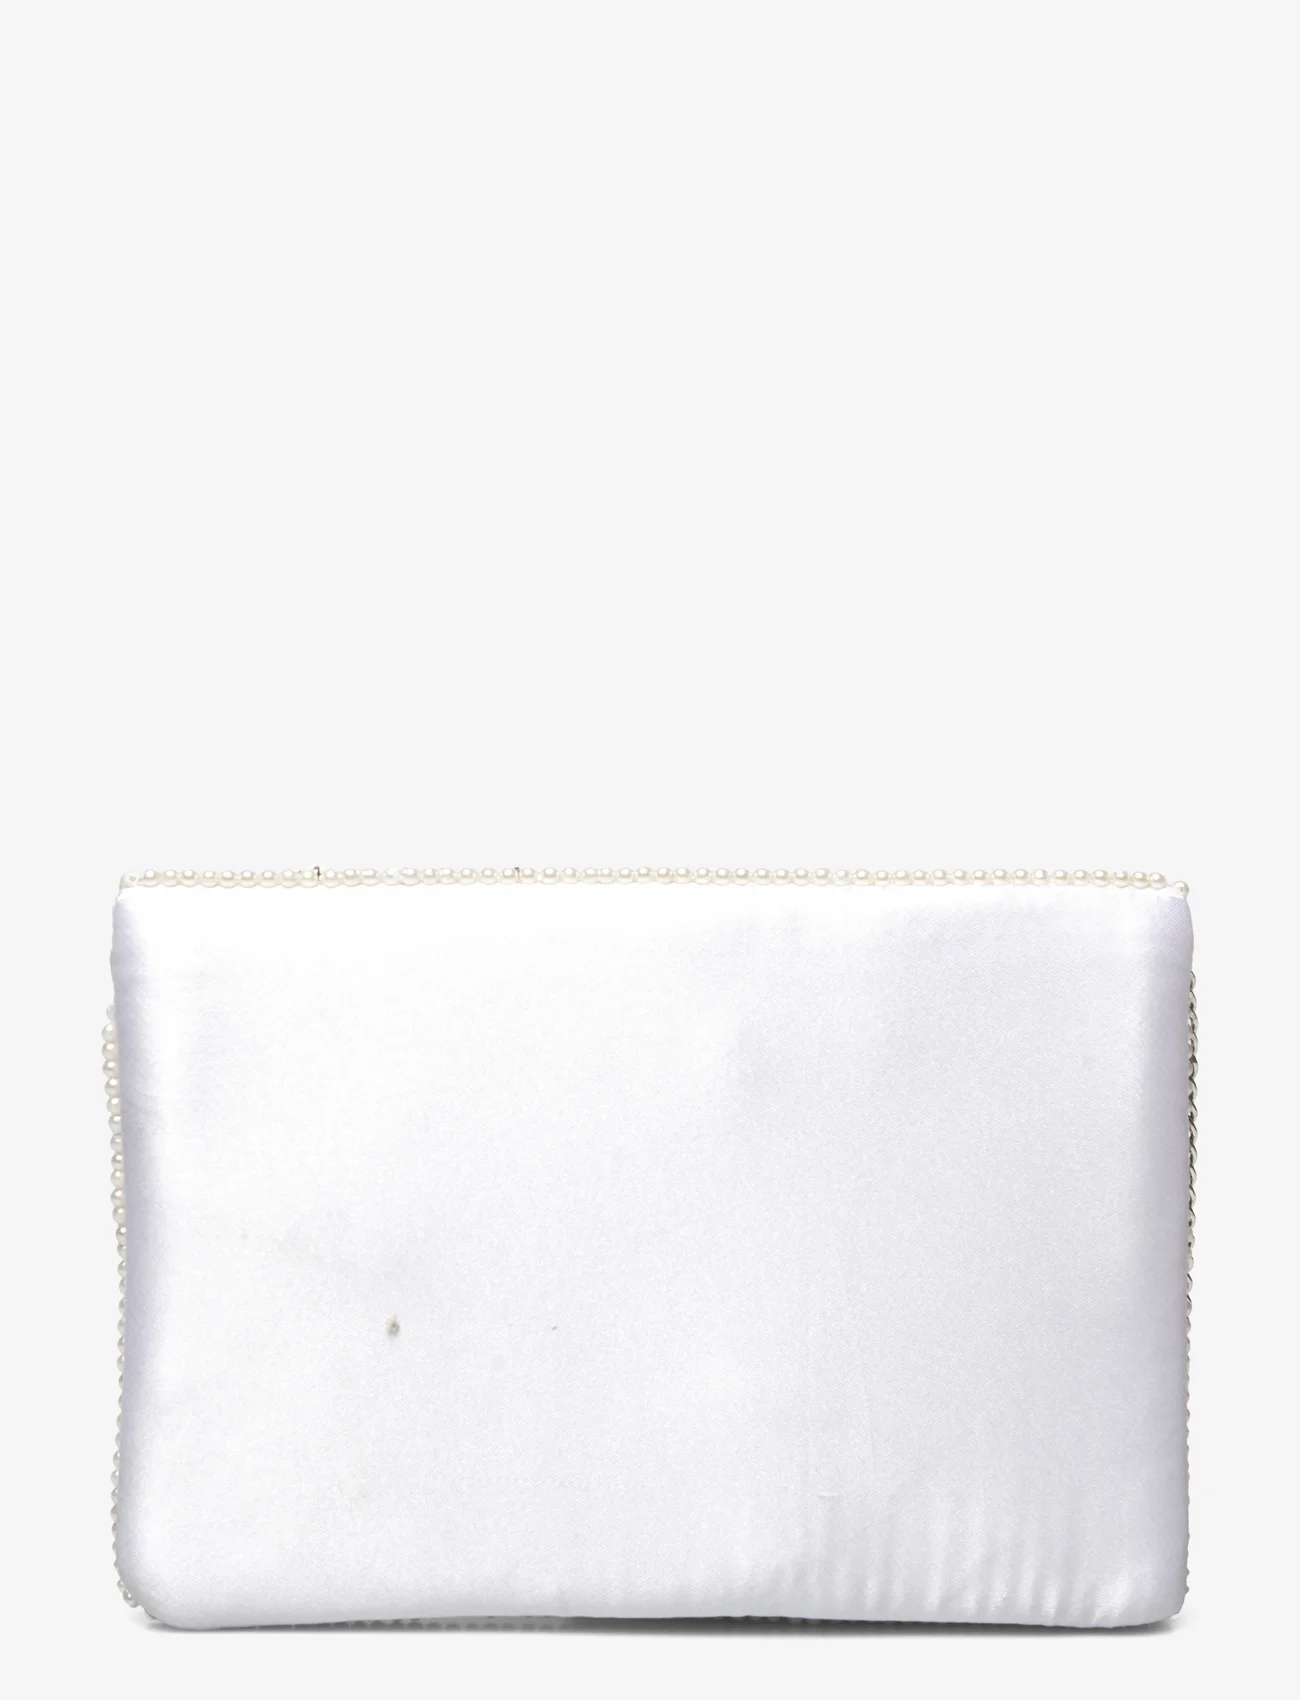 Pipol's Bazaar - Amorella Clutch White - odzież imprezowa w cenach outletowych - white - 1